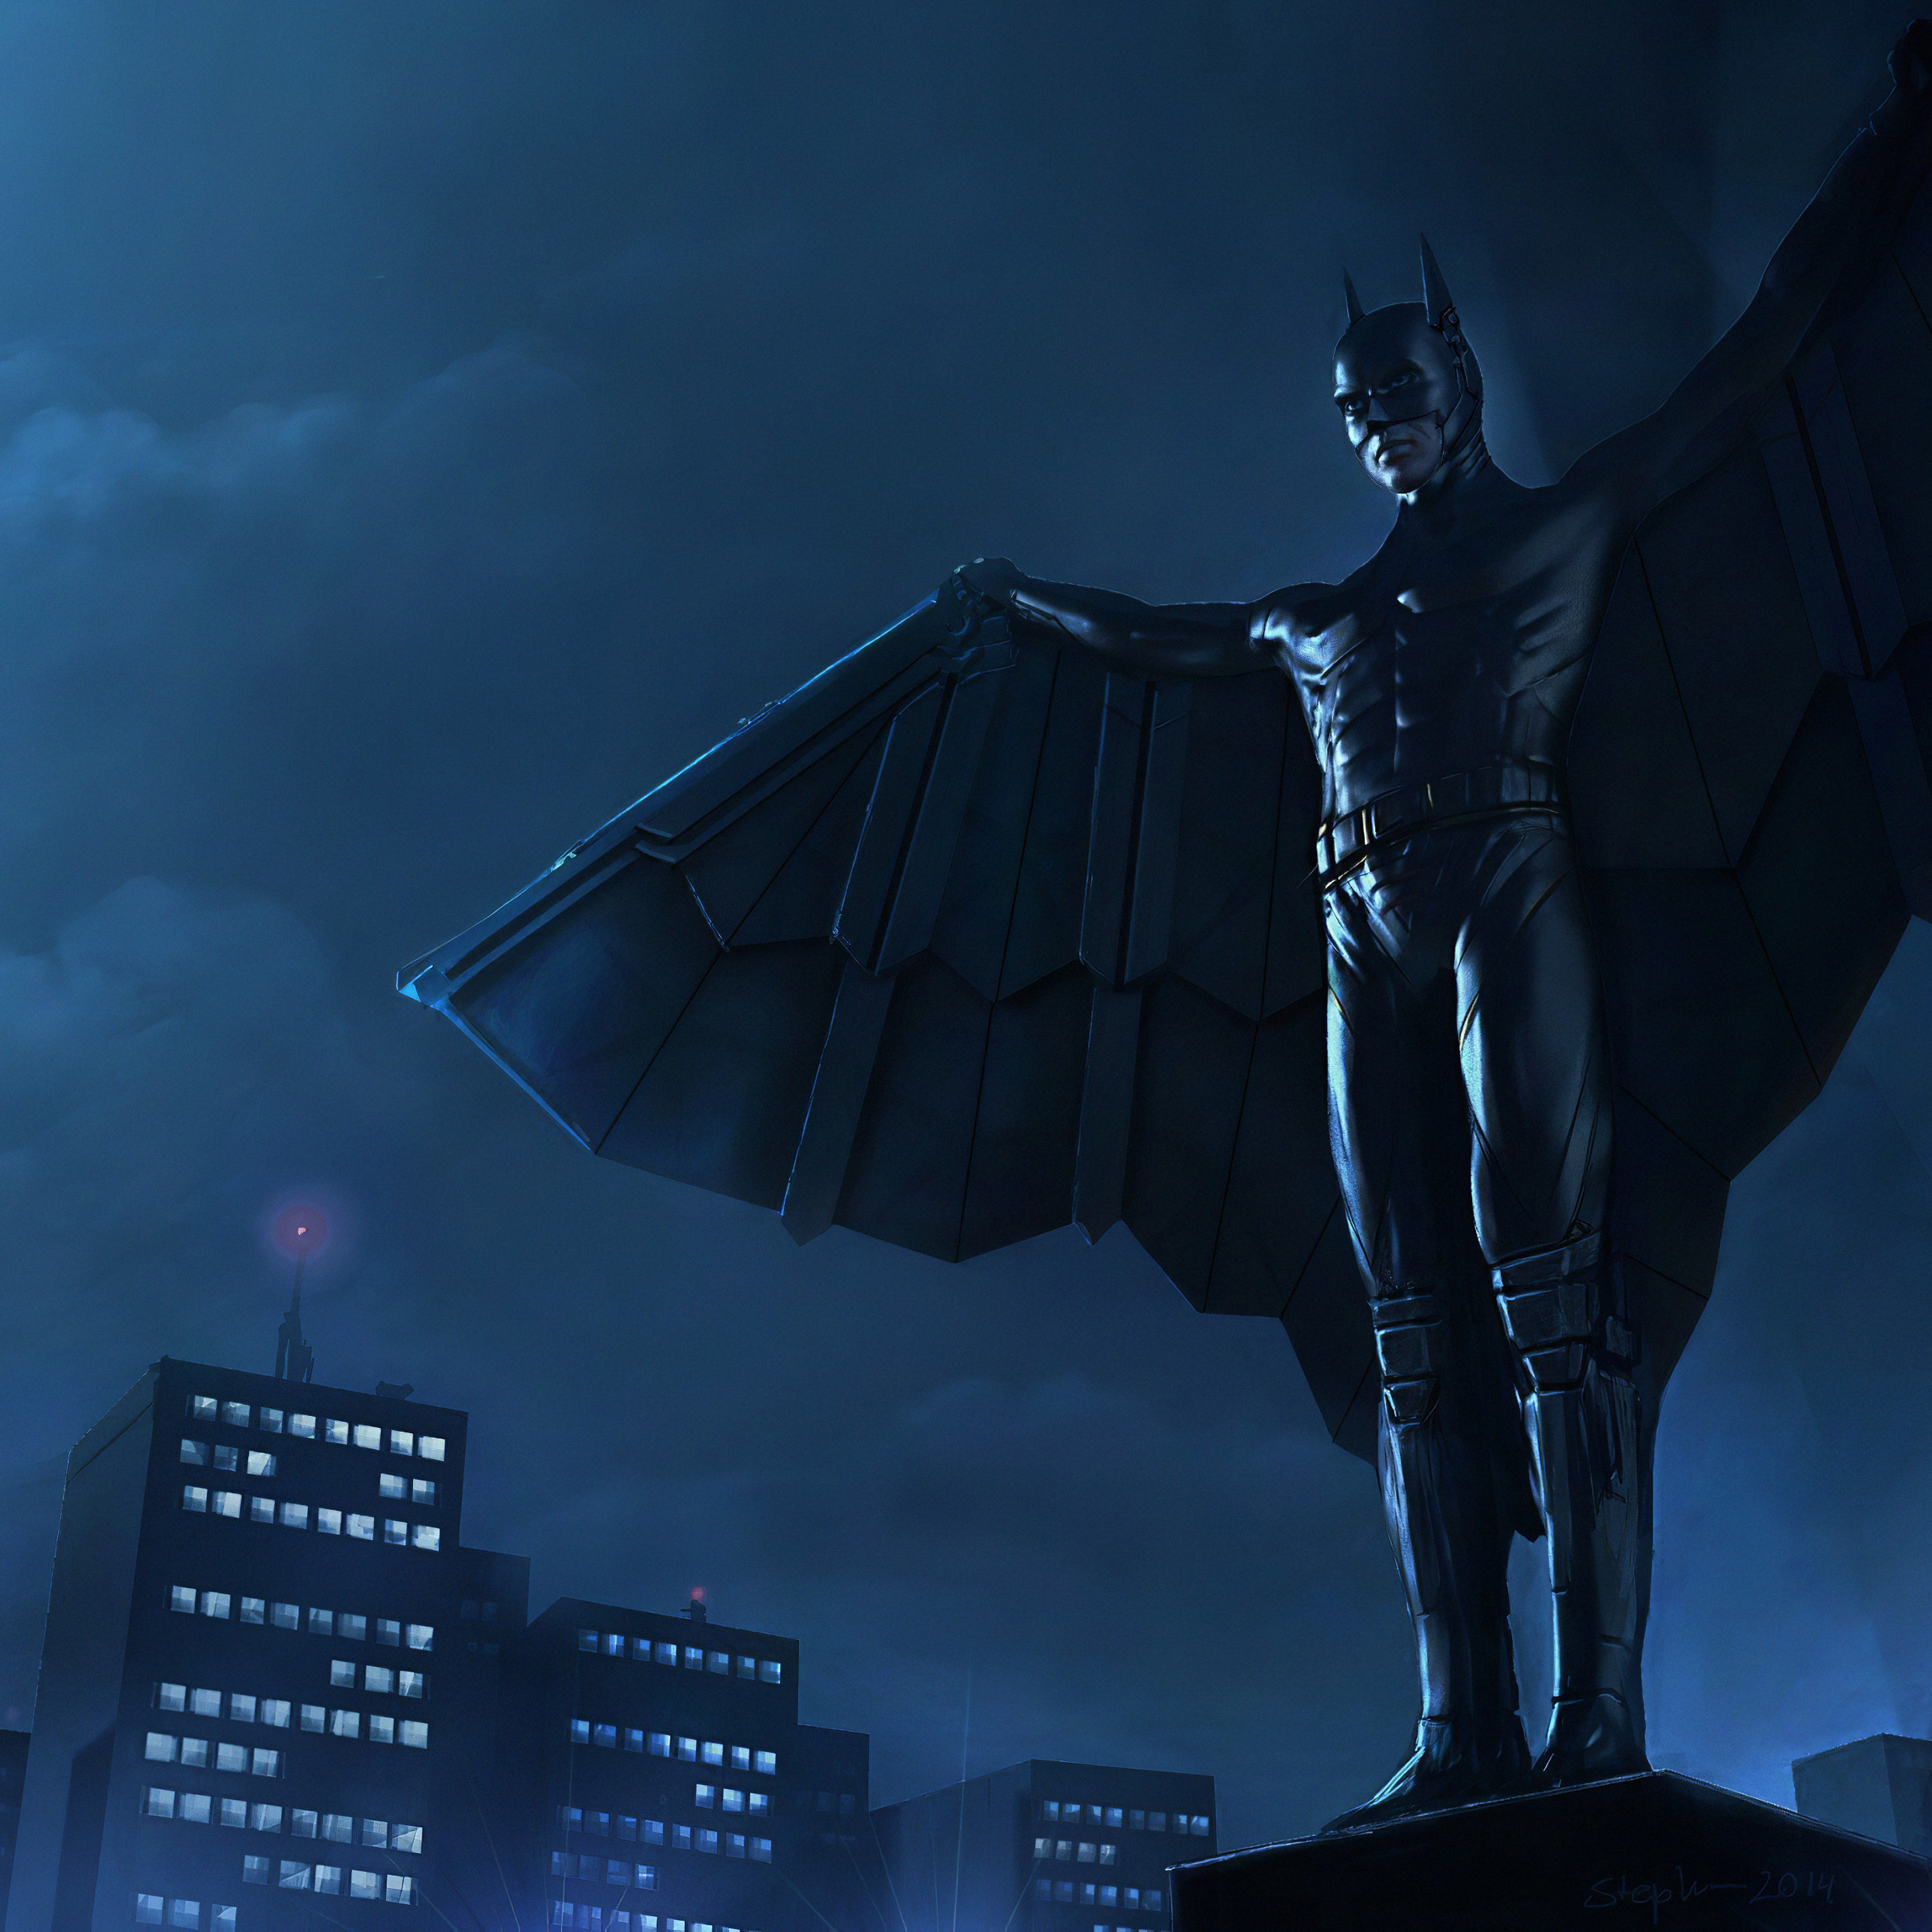 Batman cape. Бэтмен на крыше. Бэтмен киборг. Супермен с крыльями.